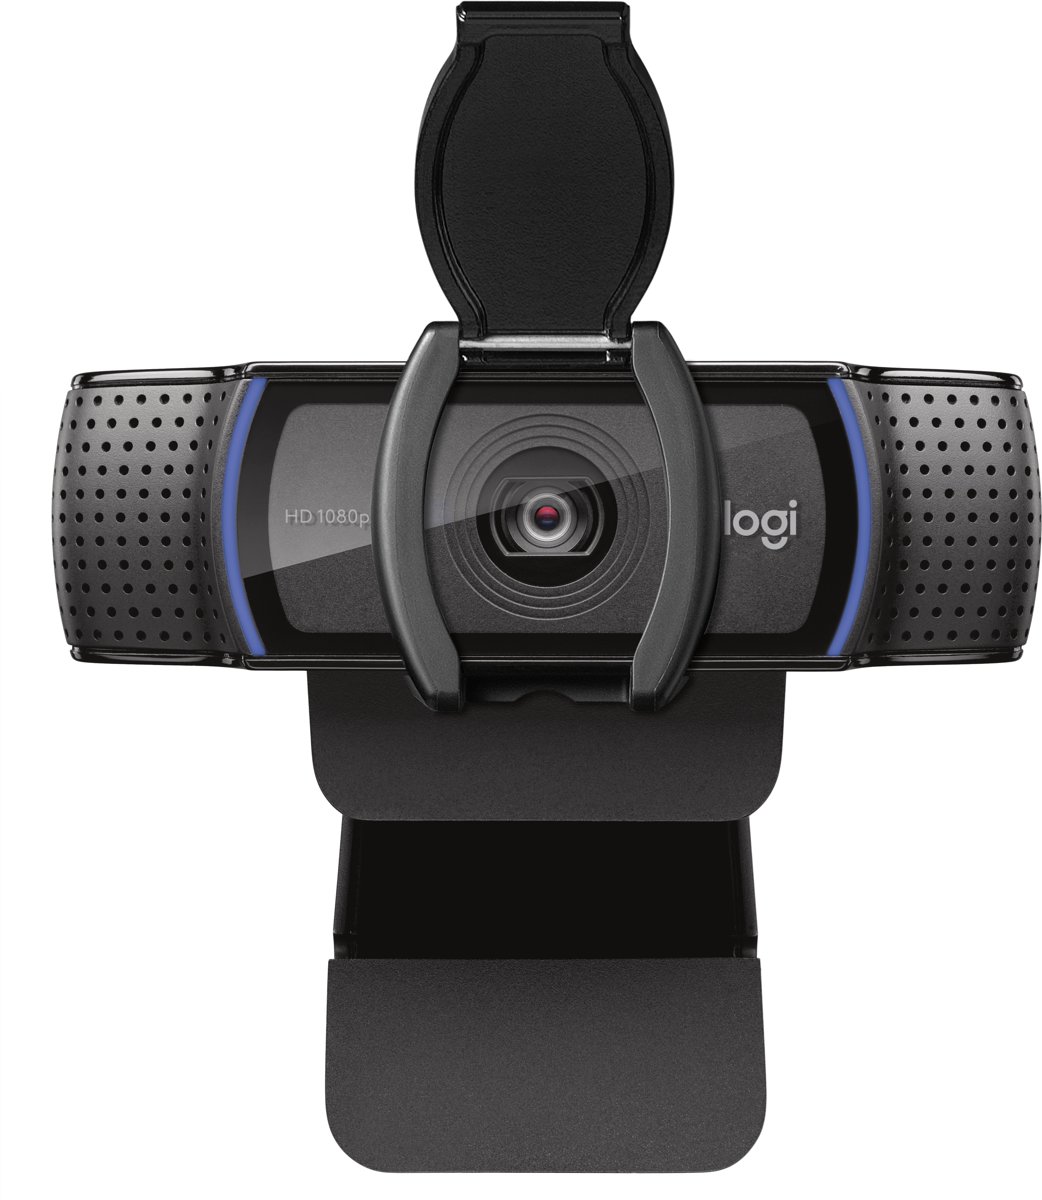   C920s - HD Pro Webcam